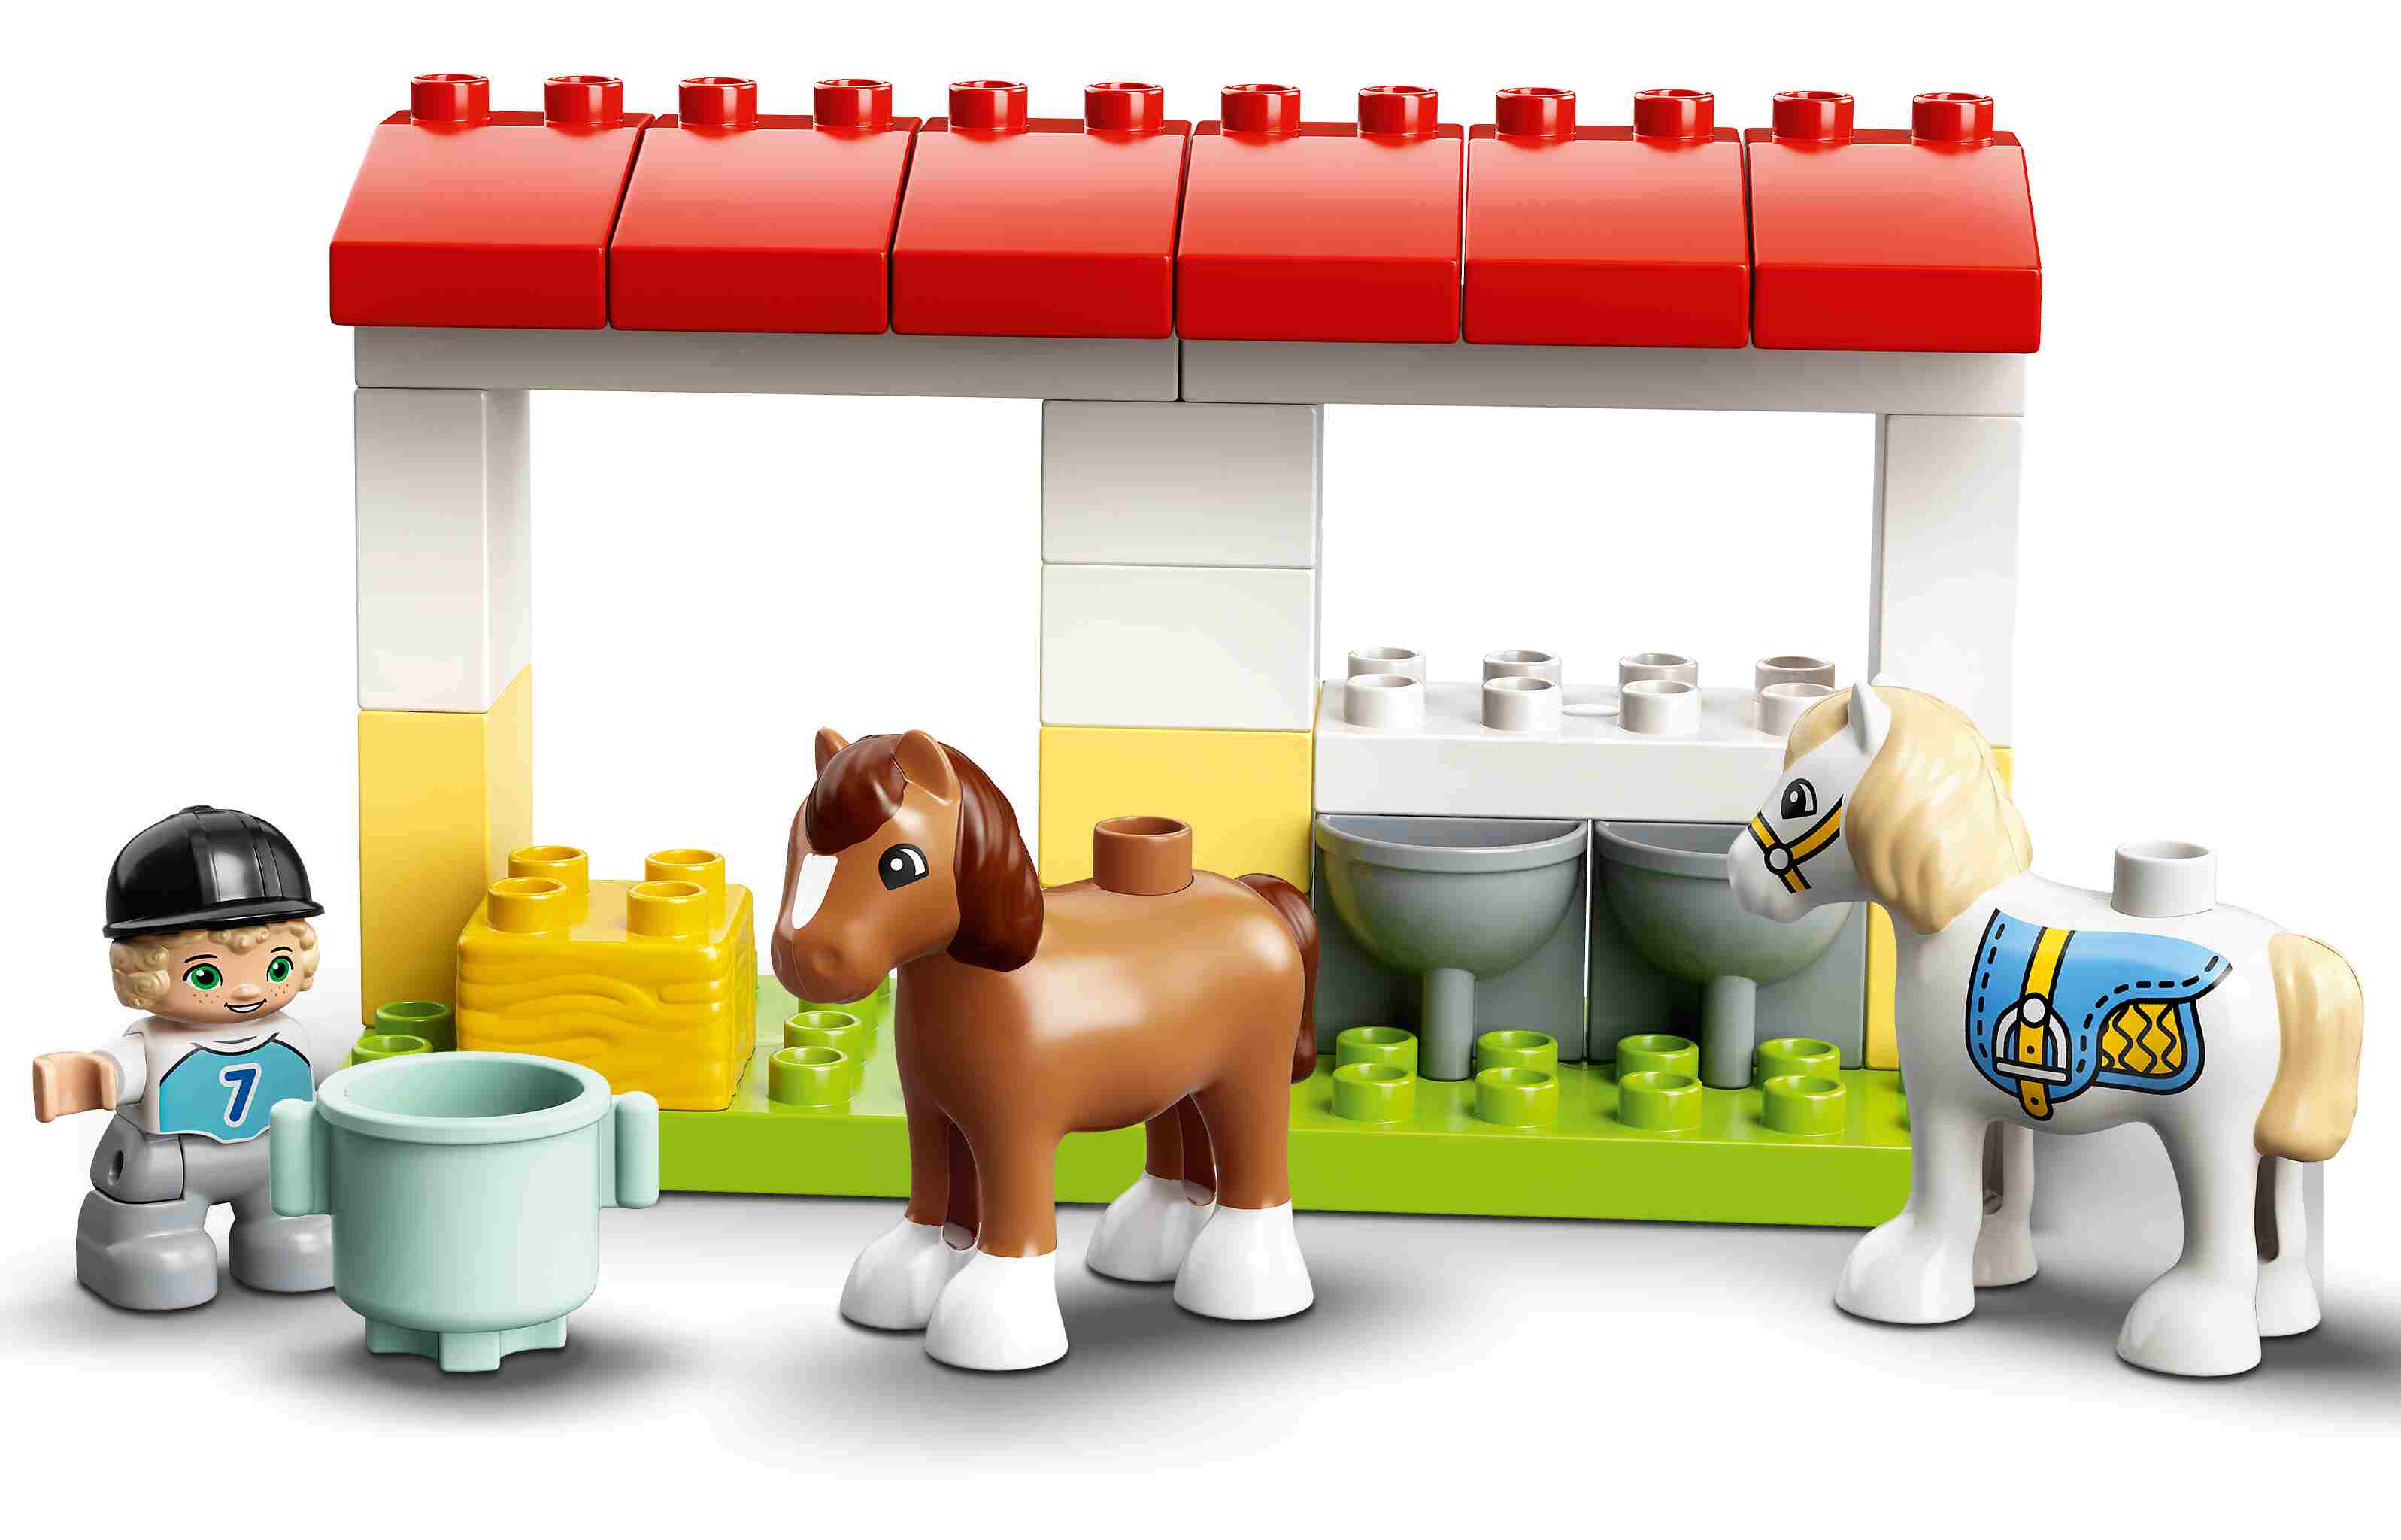 LEGO 10951 DUPLO Pferdestall und Ponypflege, Bauernhof, Kleinkinder ab 2 J